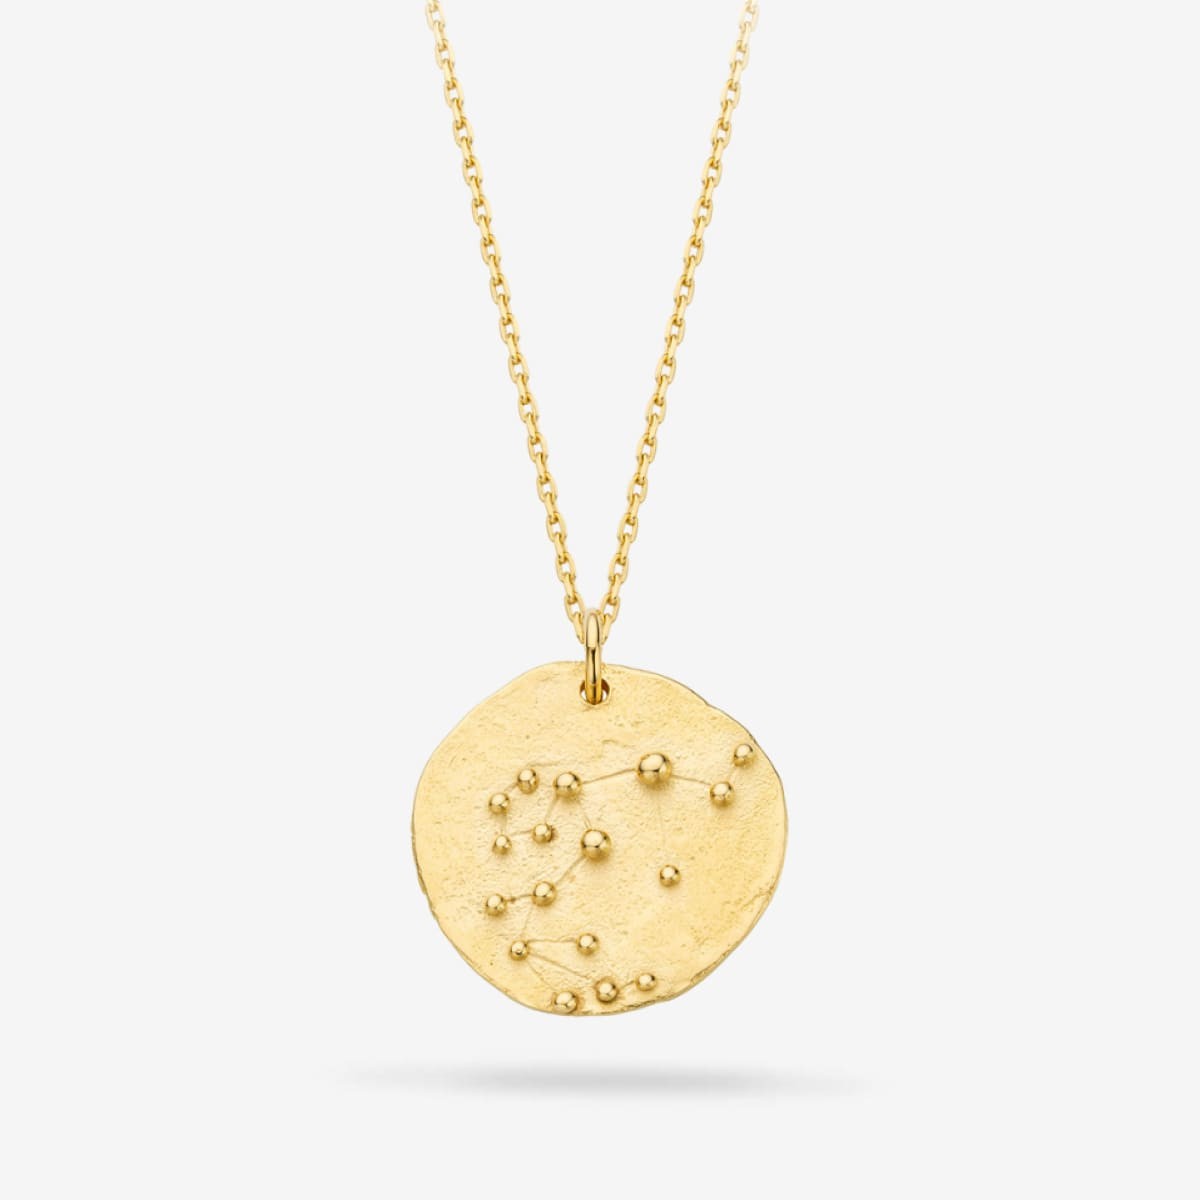 Constellation Aquarius Medallion Gold - Halsketten - 18k vergoldet